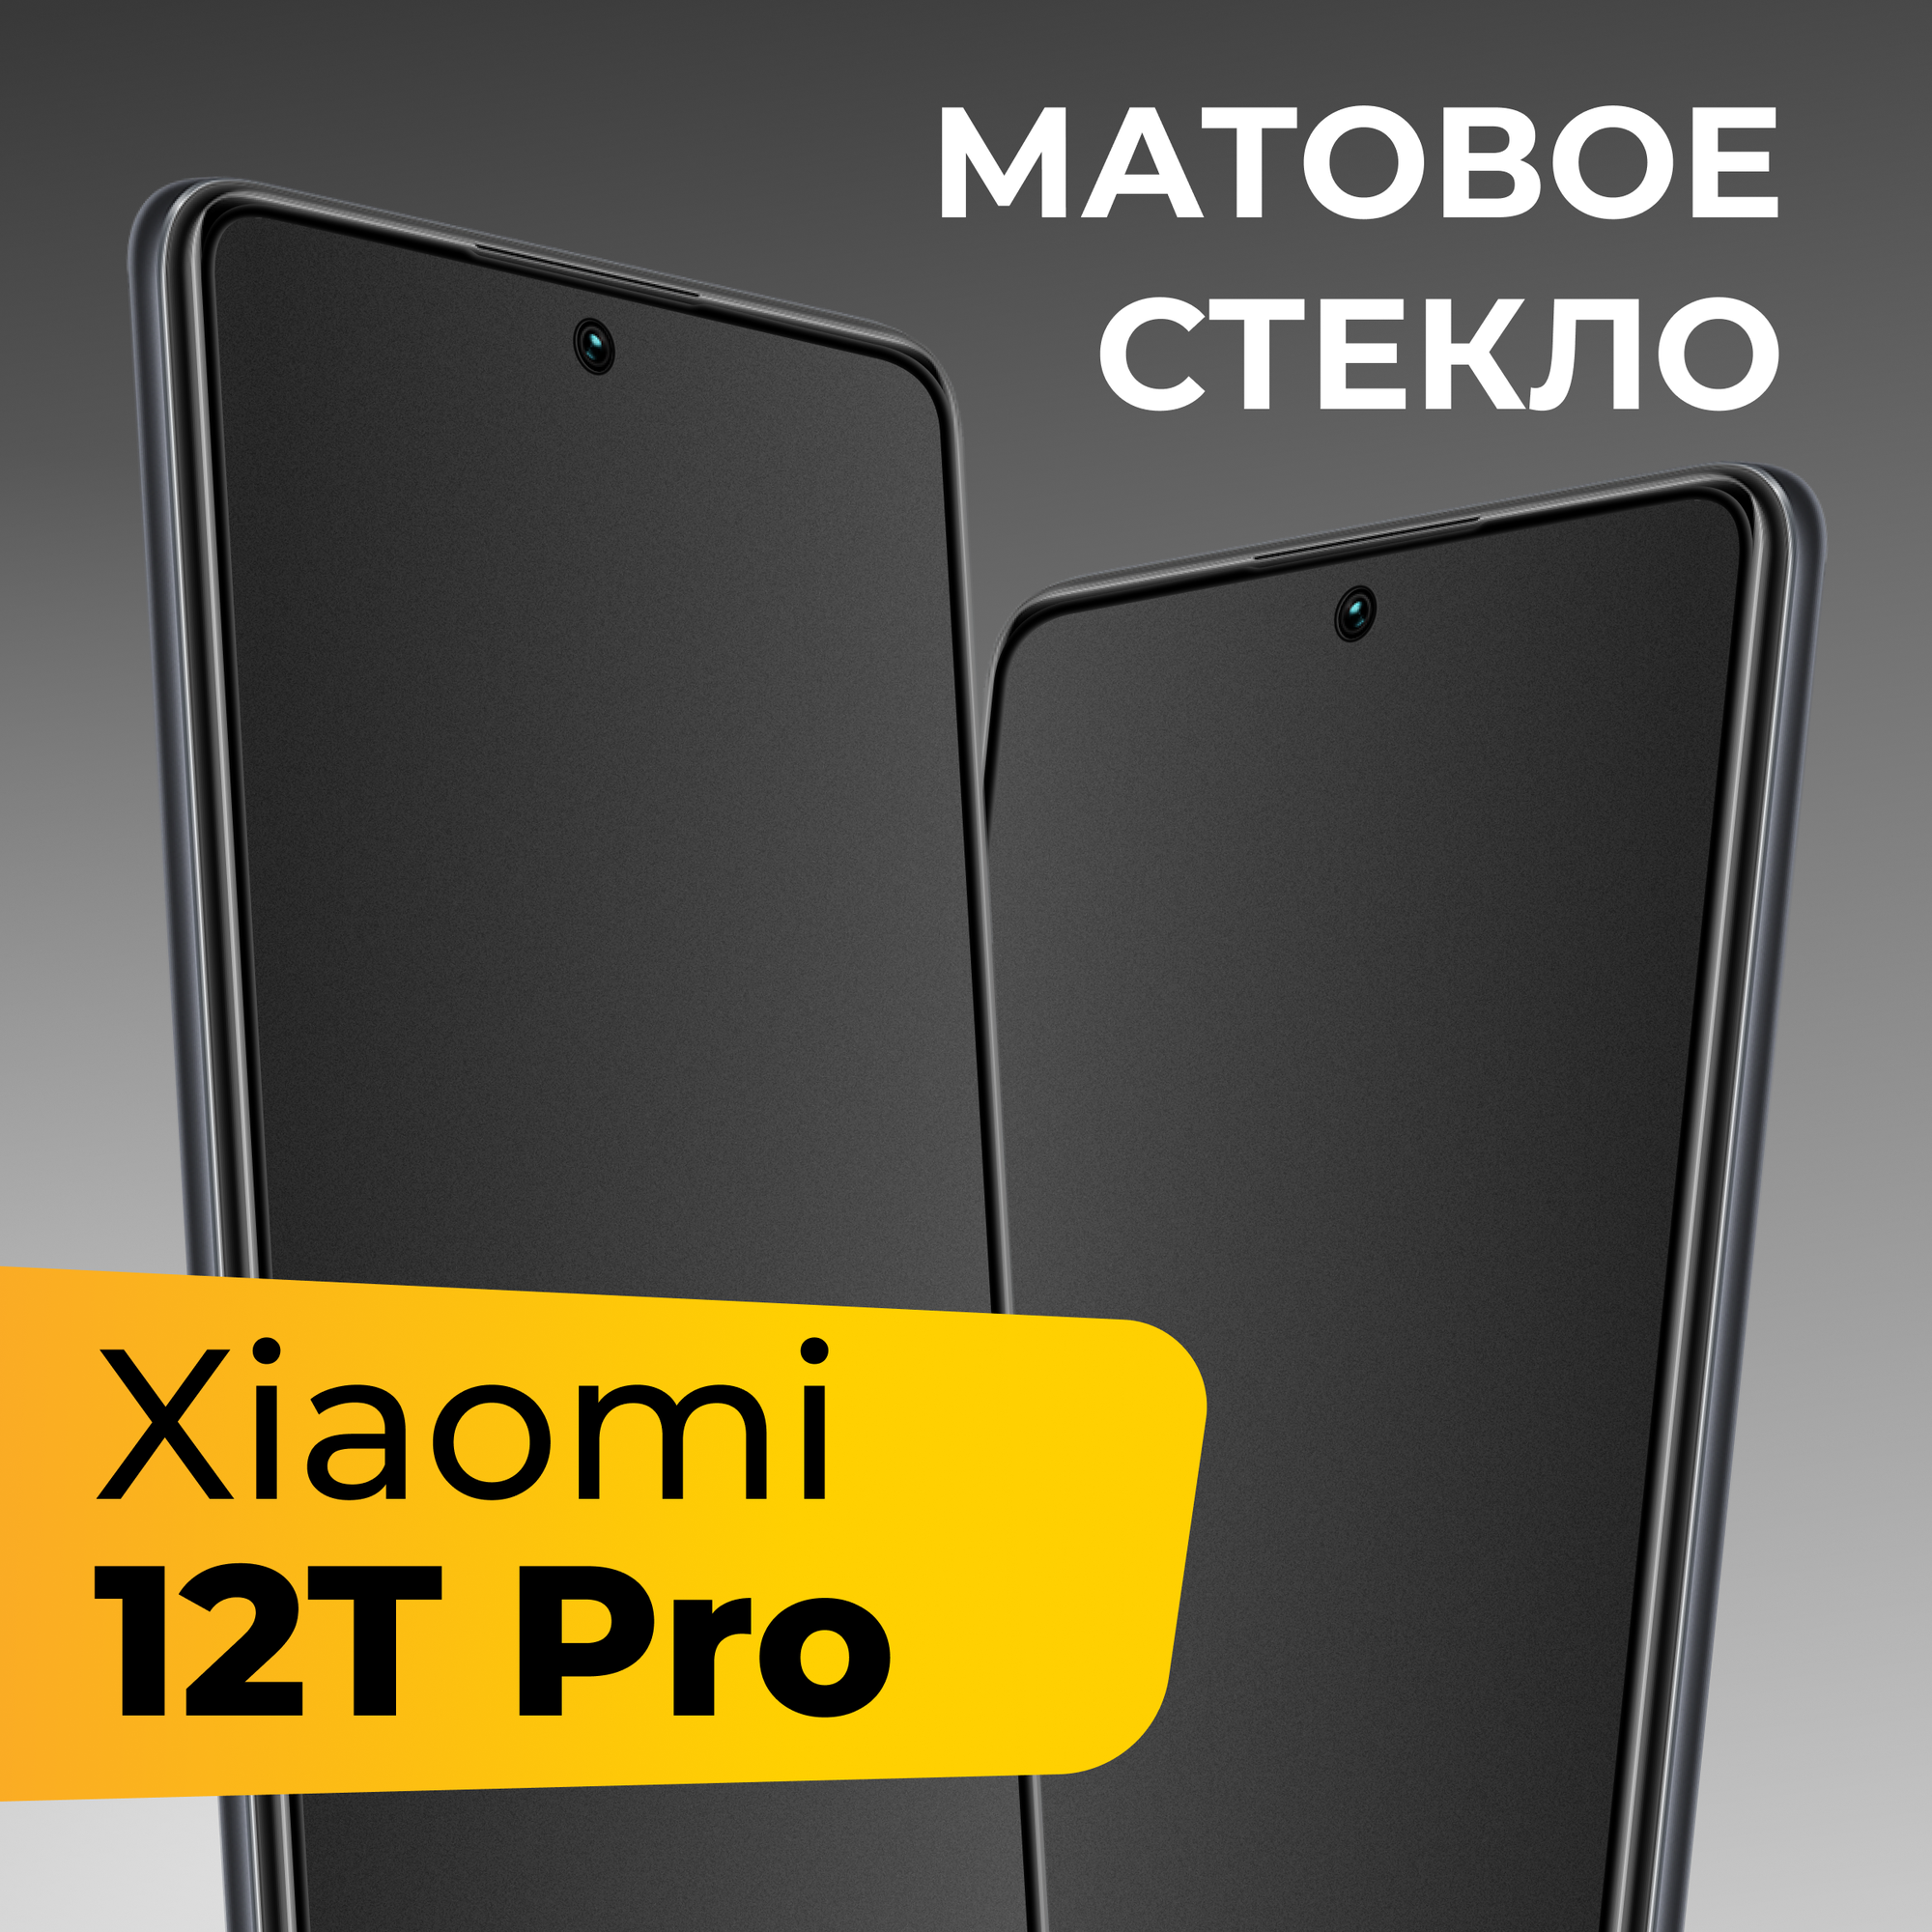 Матовое защитное стекло для телефона Xiaomi 12T Pro / Противоударное закаленное стекло на весь экран для смартфона Сяоми 12Т Про